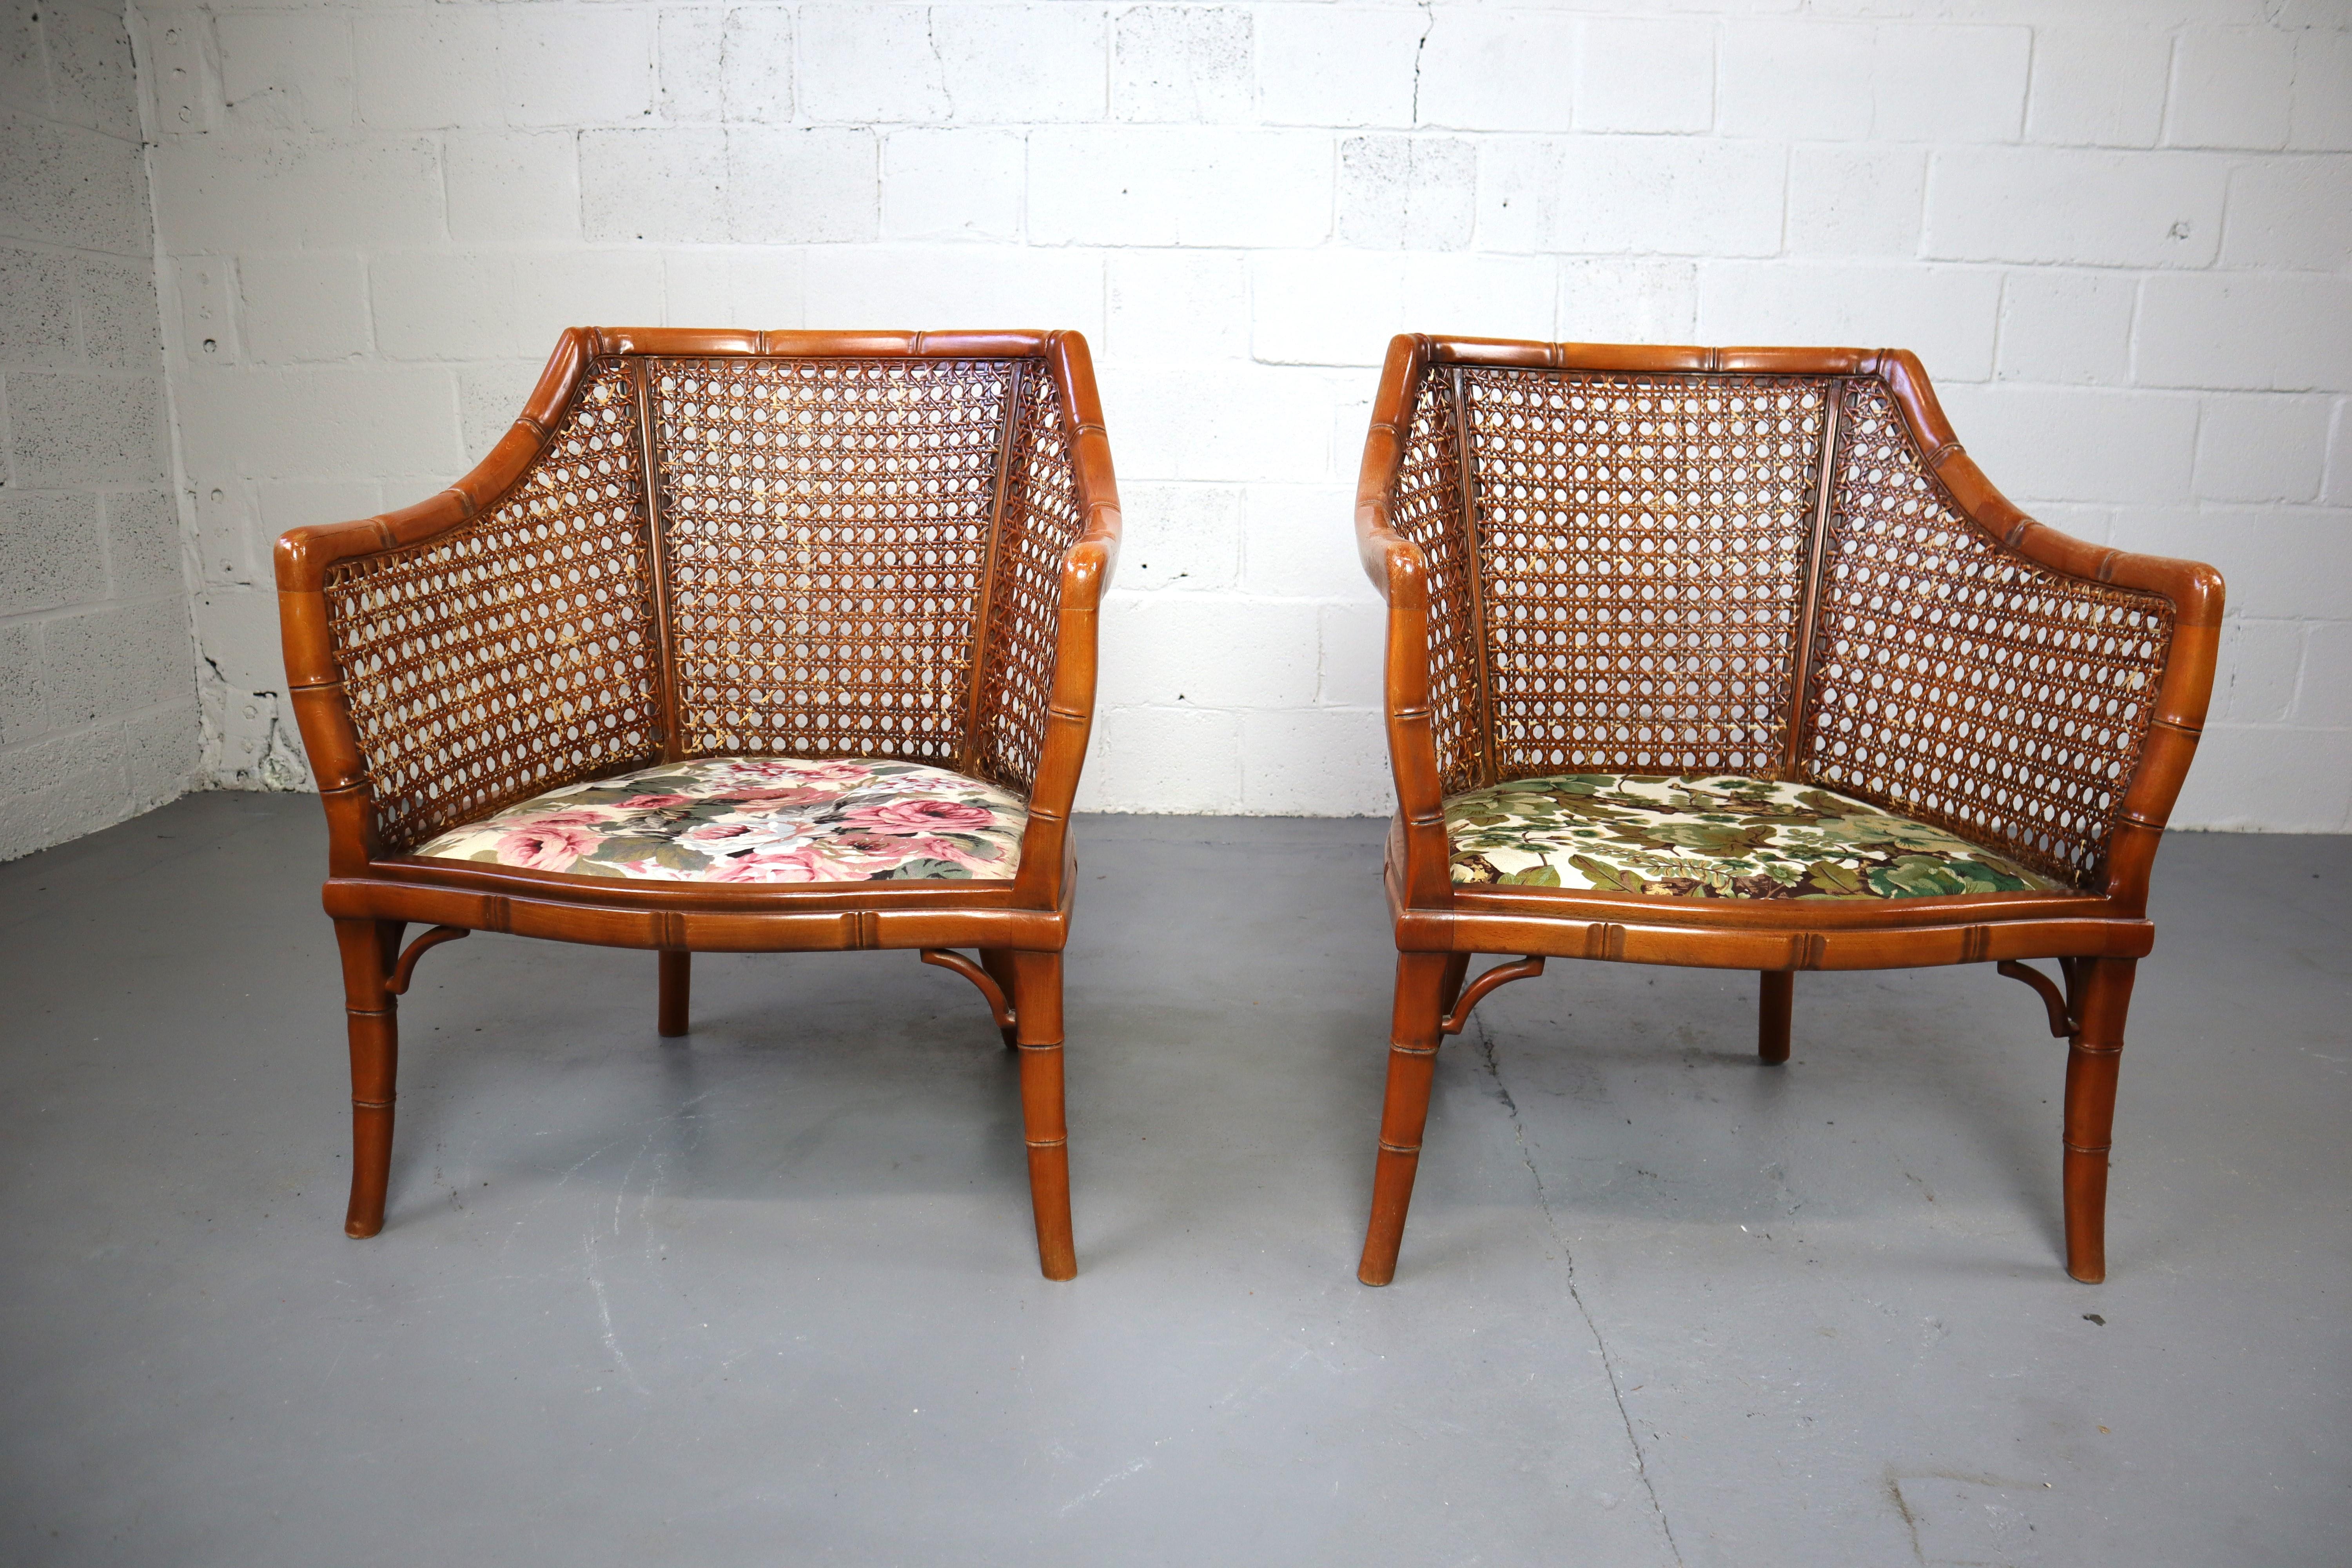 Paar Giorgetti-Sessel aus Kunstbambus und Rattan, 1970er-Jahre (20. Jahrhundert)